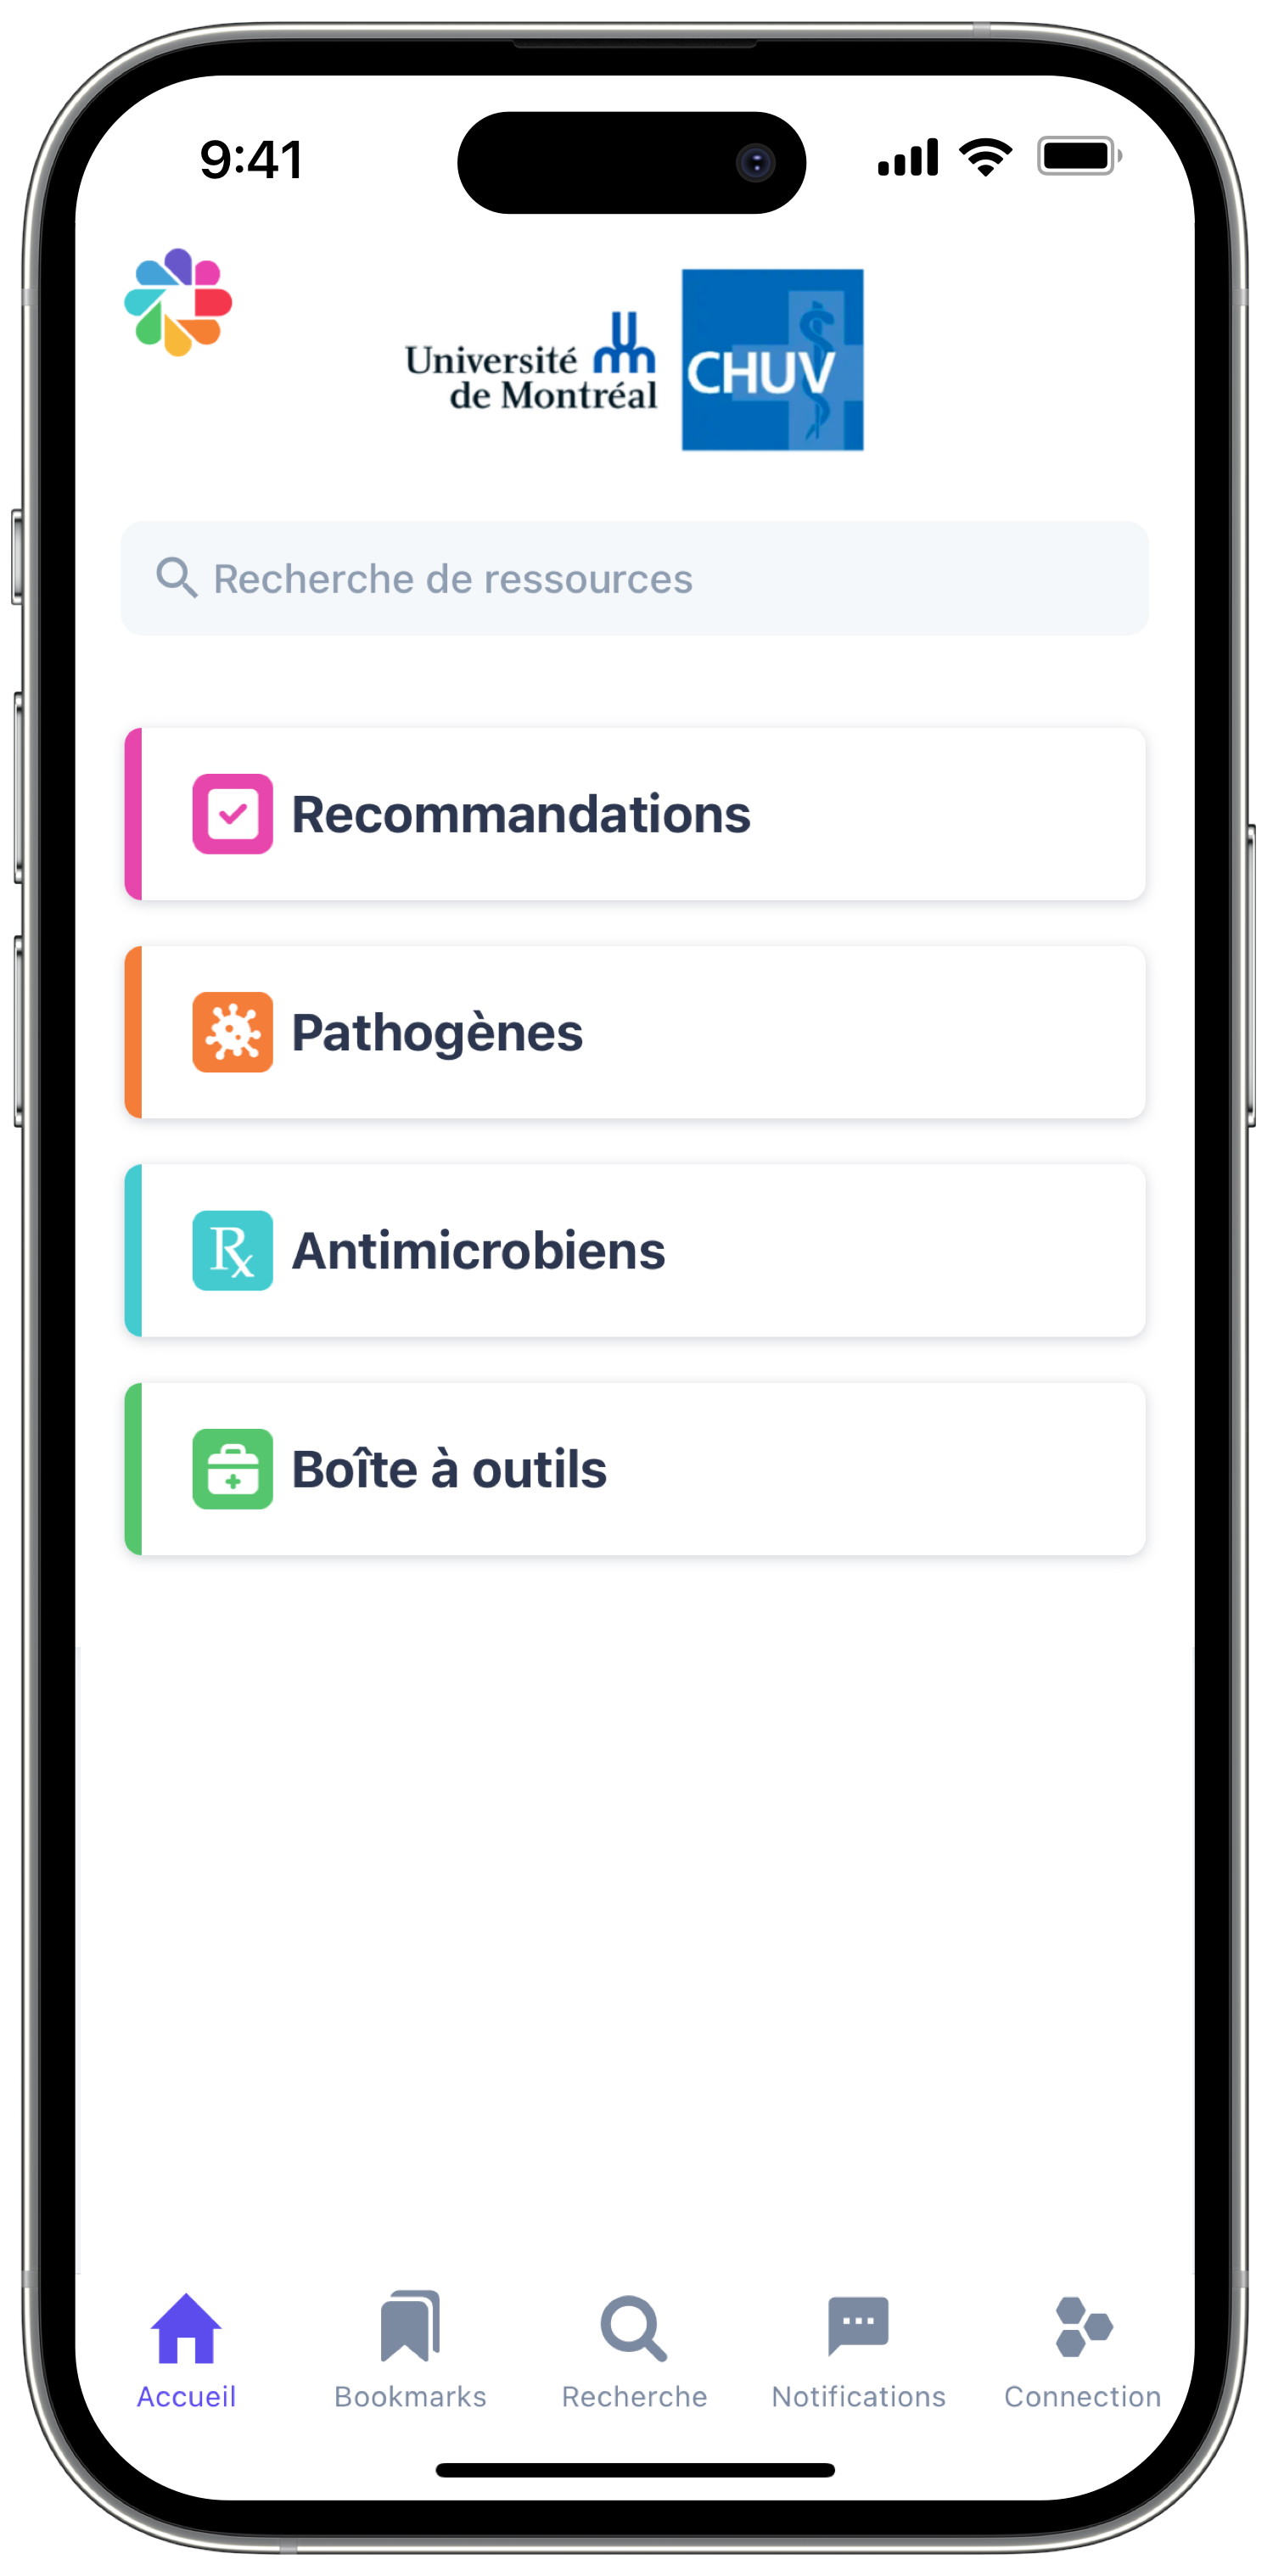 Firstline ID mobile app for CHUV - Université de Montréal